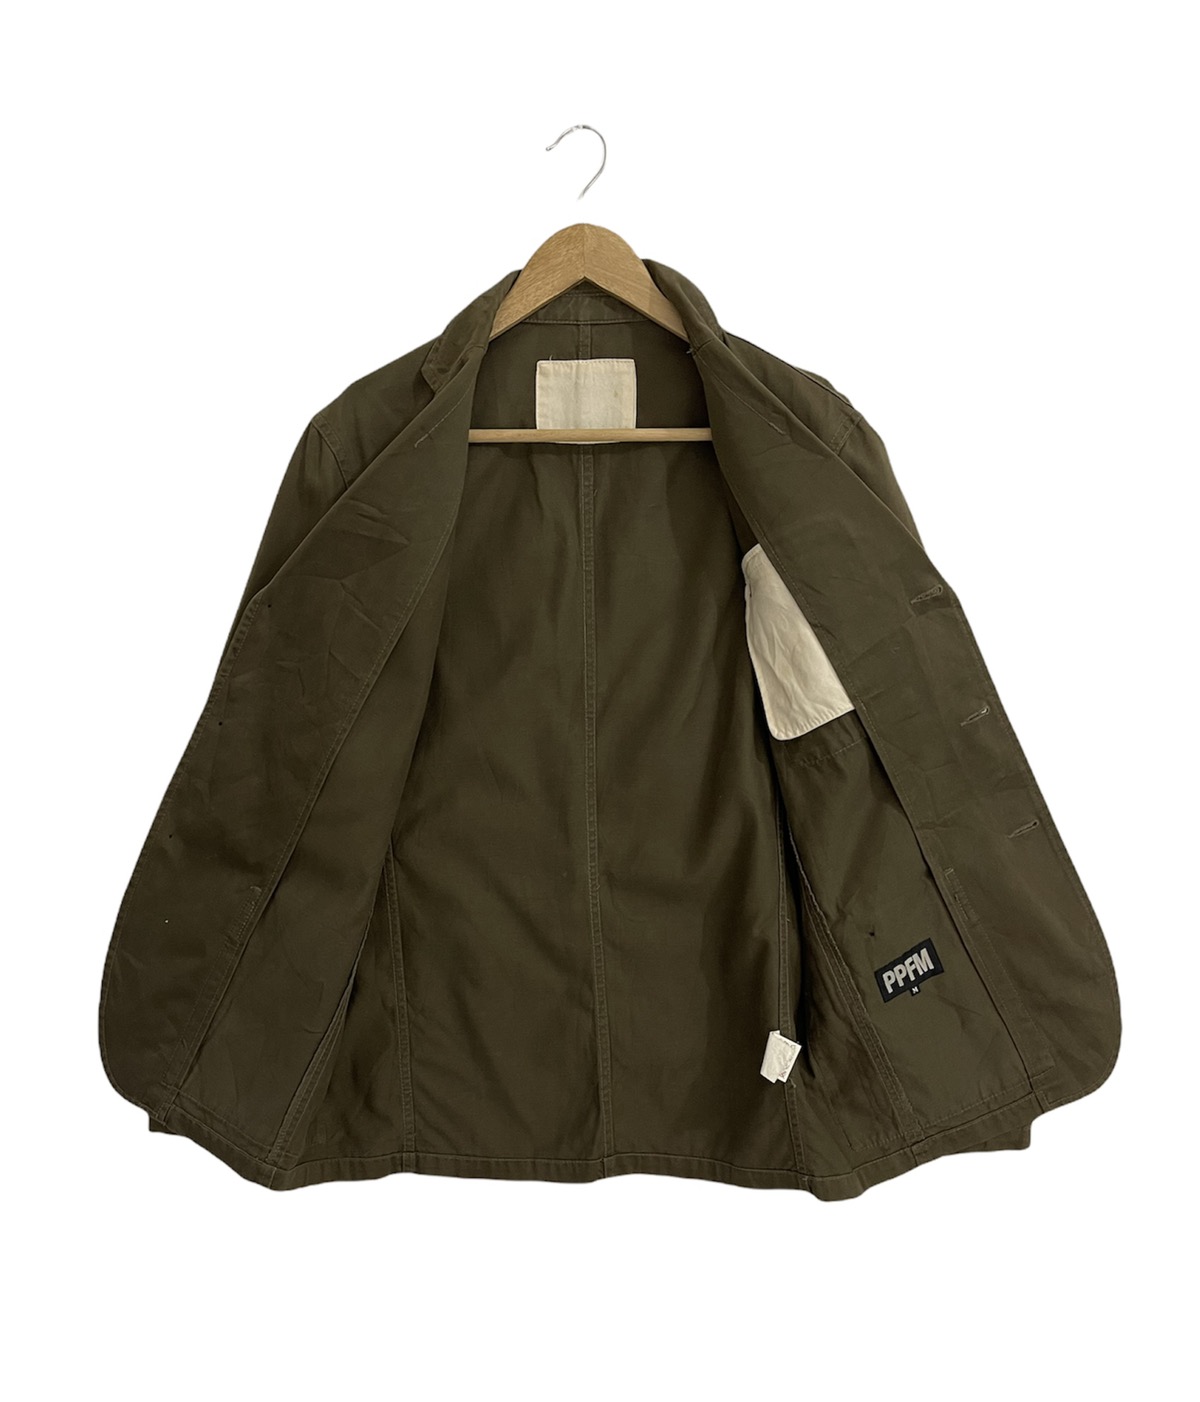 Other Designers Japanese Brand - Vintage PPFM Jacket